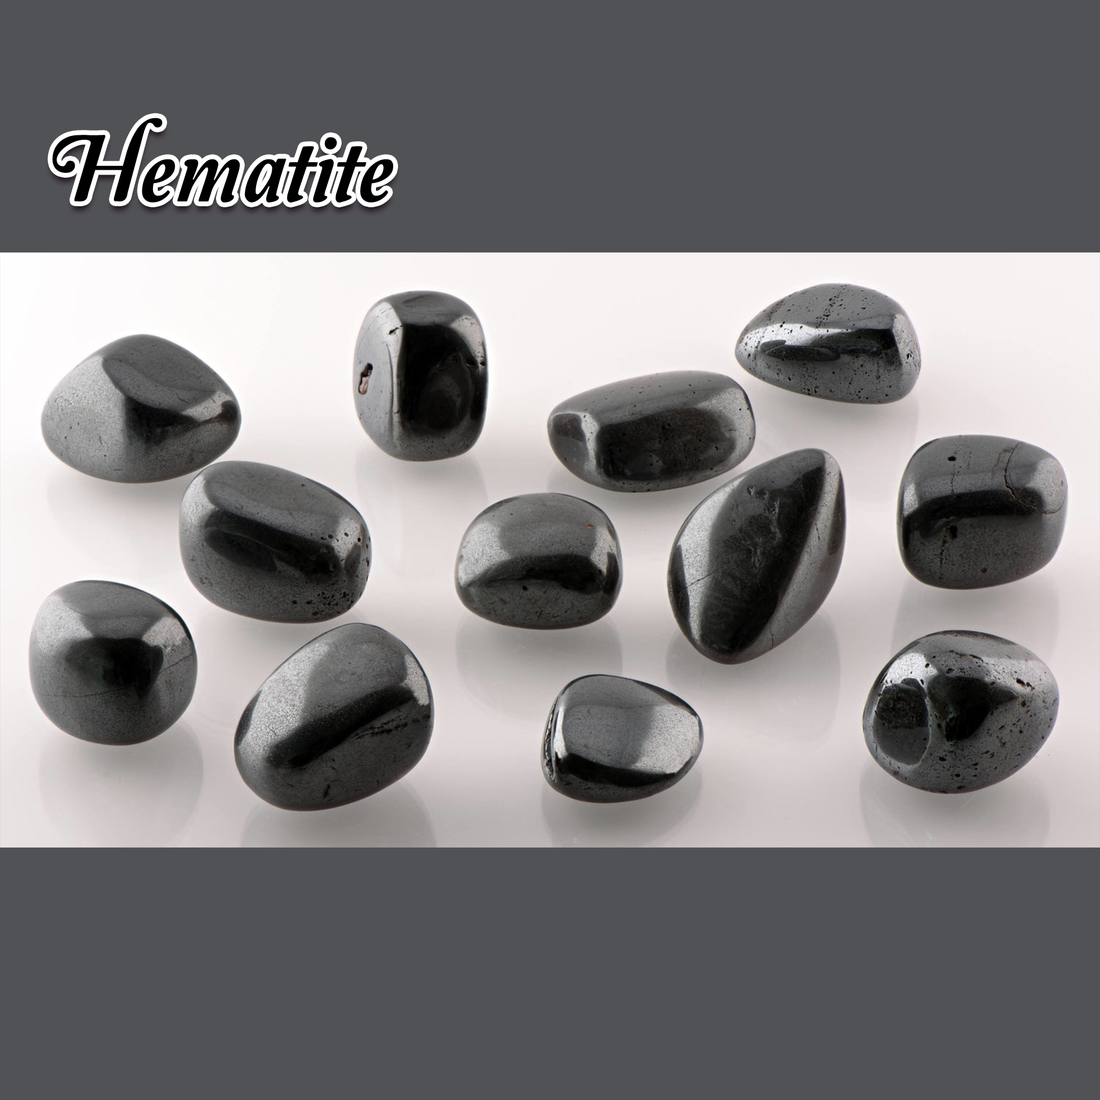 Hematite Natural Tumbled Stone - One Stone - Hematite